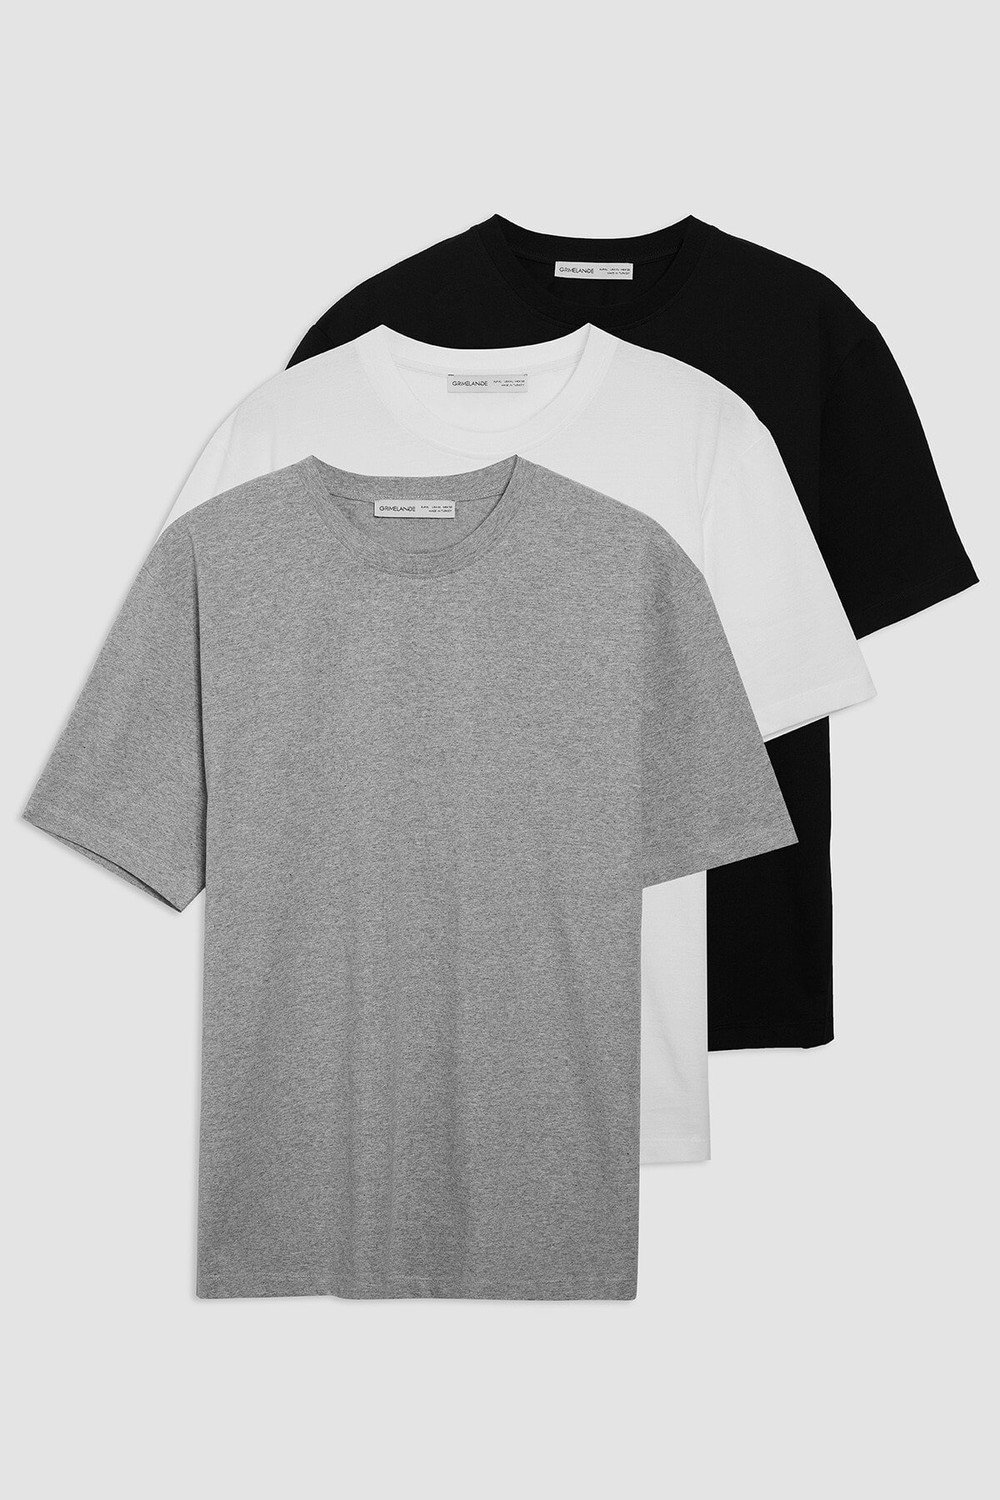 GRIMELANGE T-Shirt - Multicolor - Regular fit